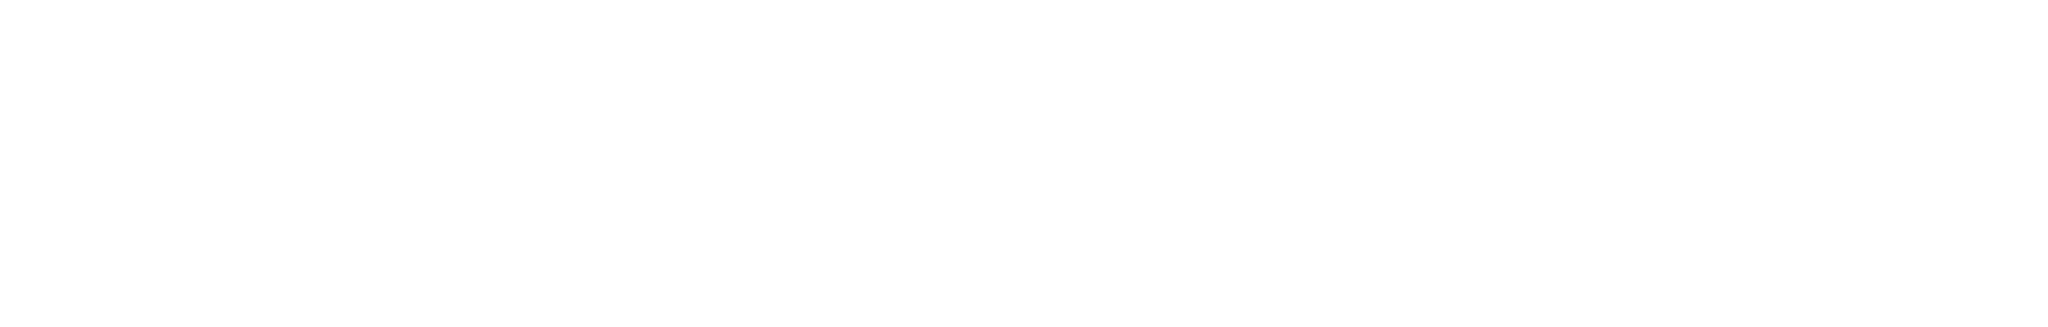 Znak Wodny_Supido_logo horyzontalne + slogan_czarne tło